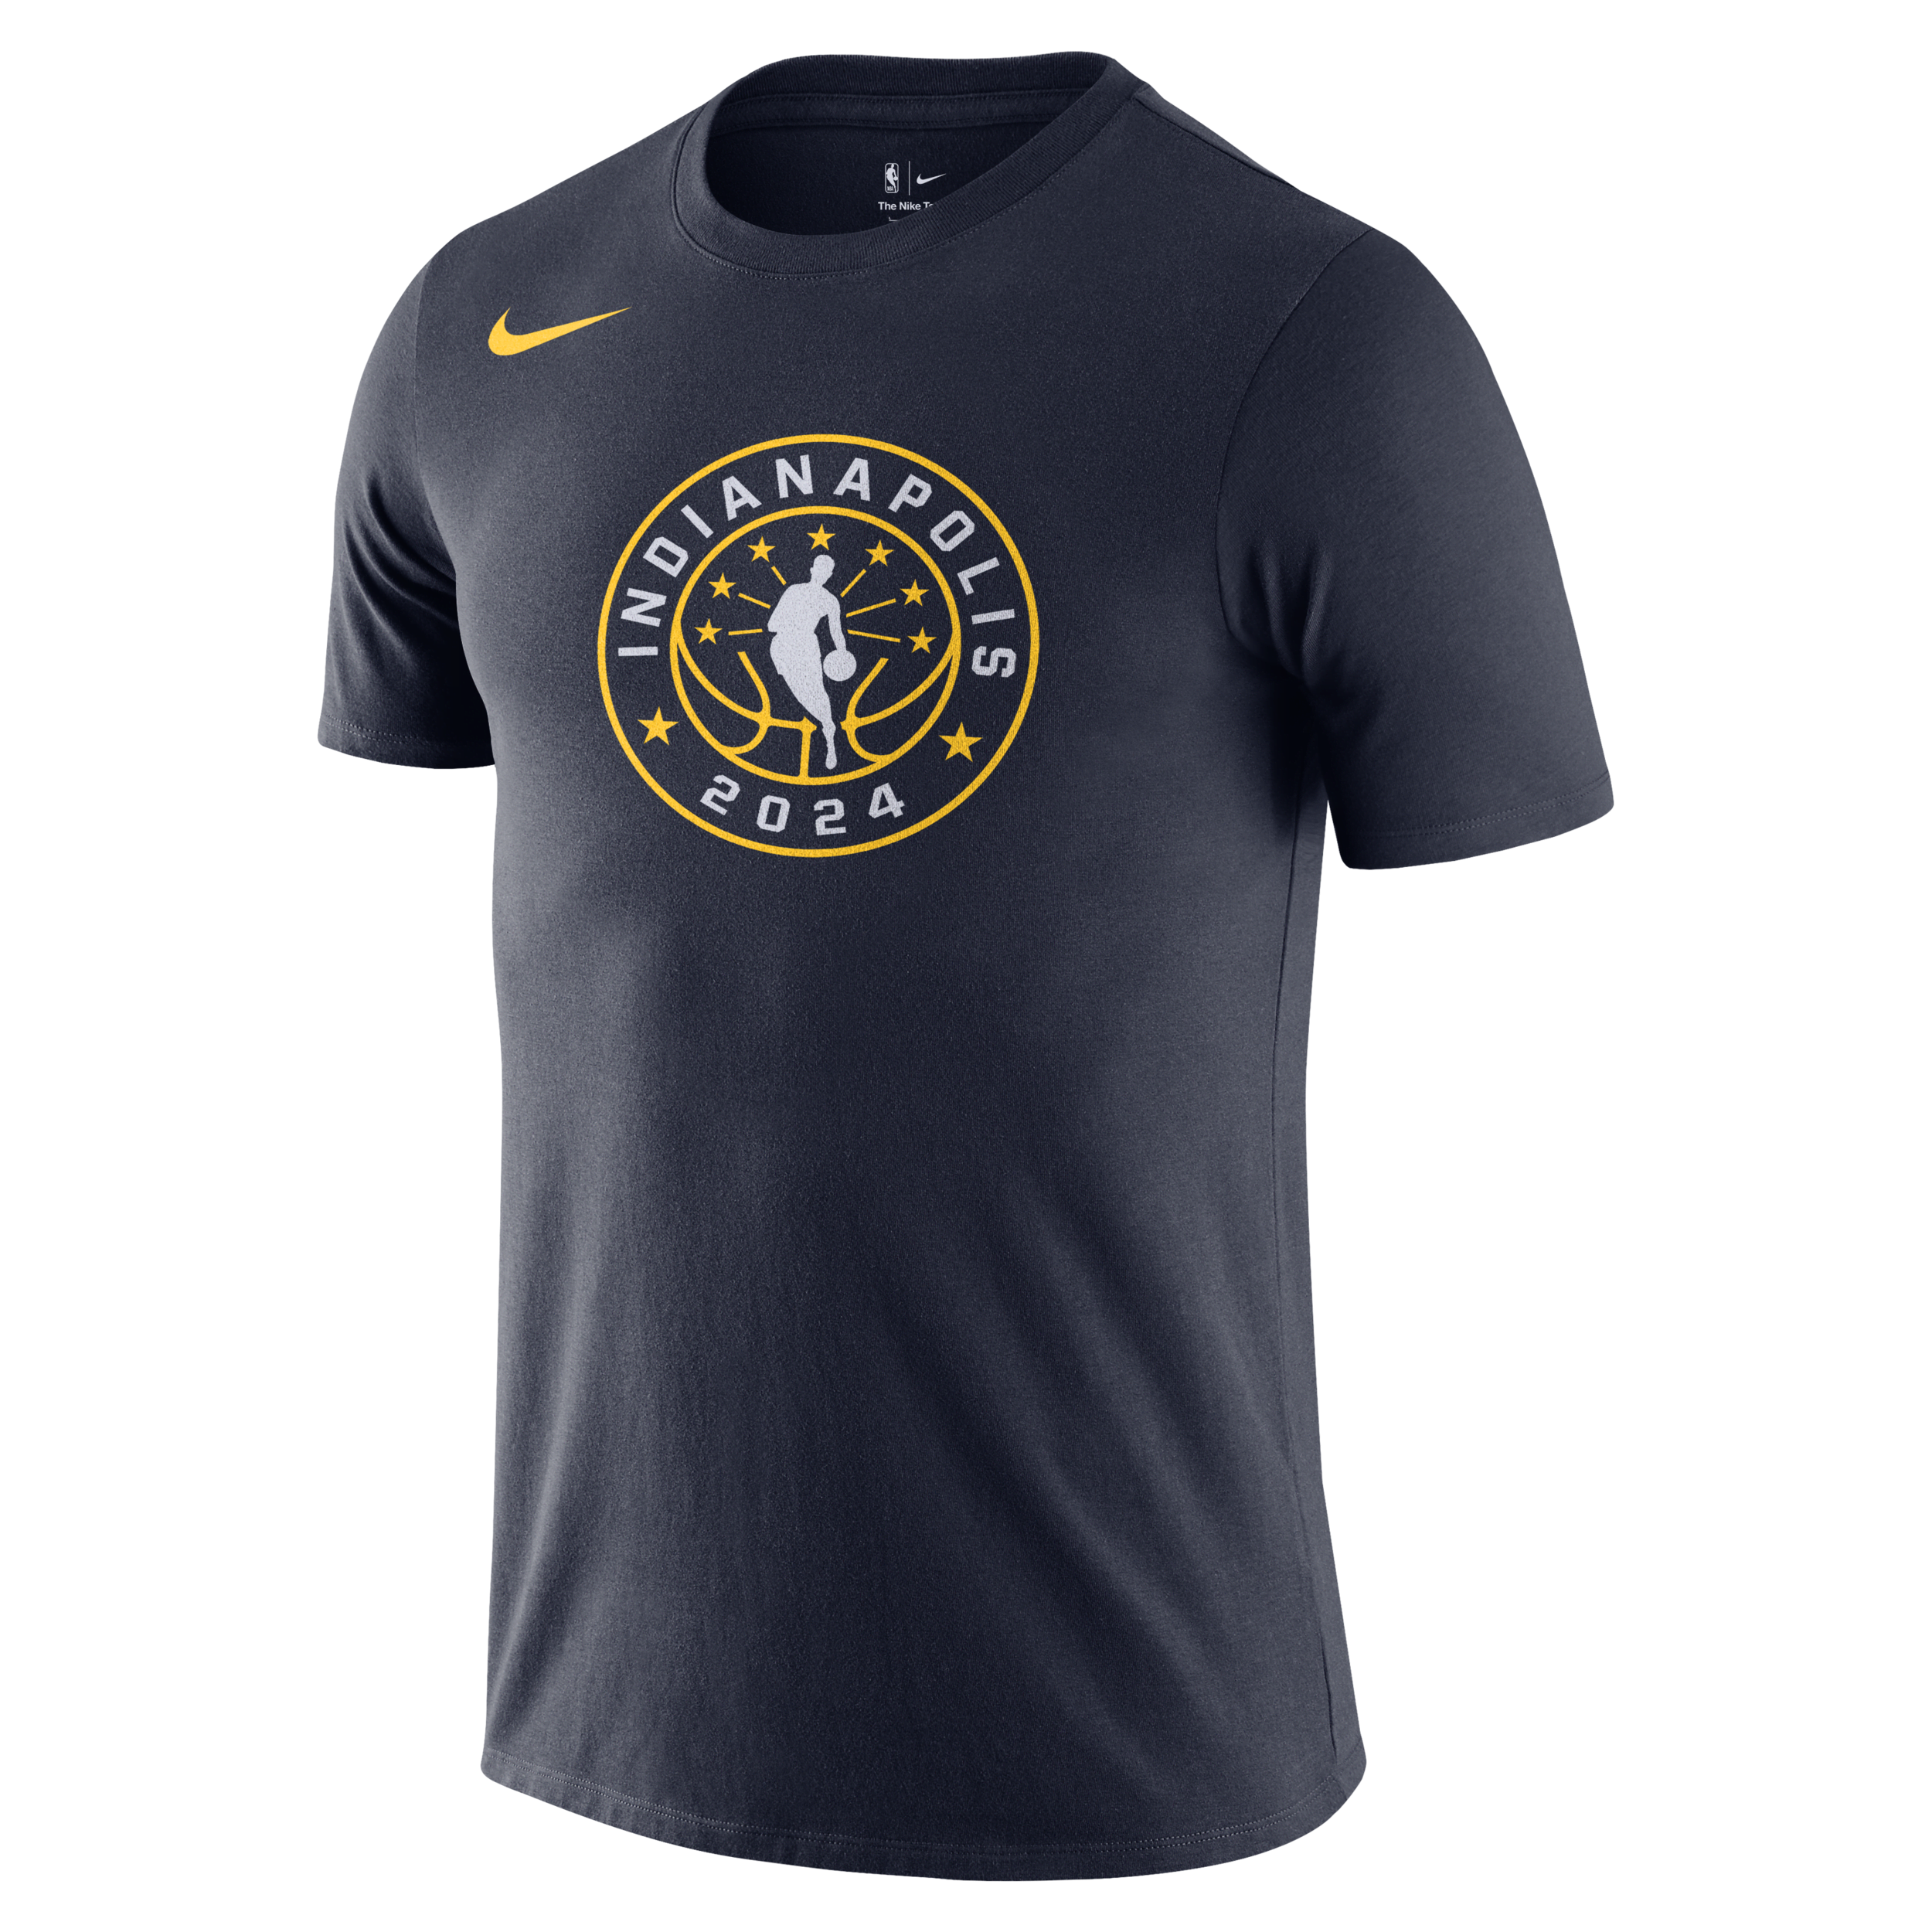 Team 31 All-Star Weekend Essential Nike NBA-shirt met ronde hals voor heren - Blauw